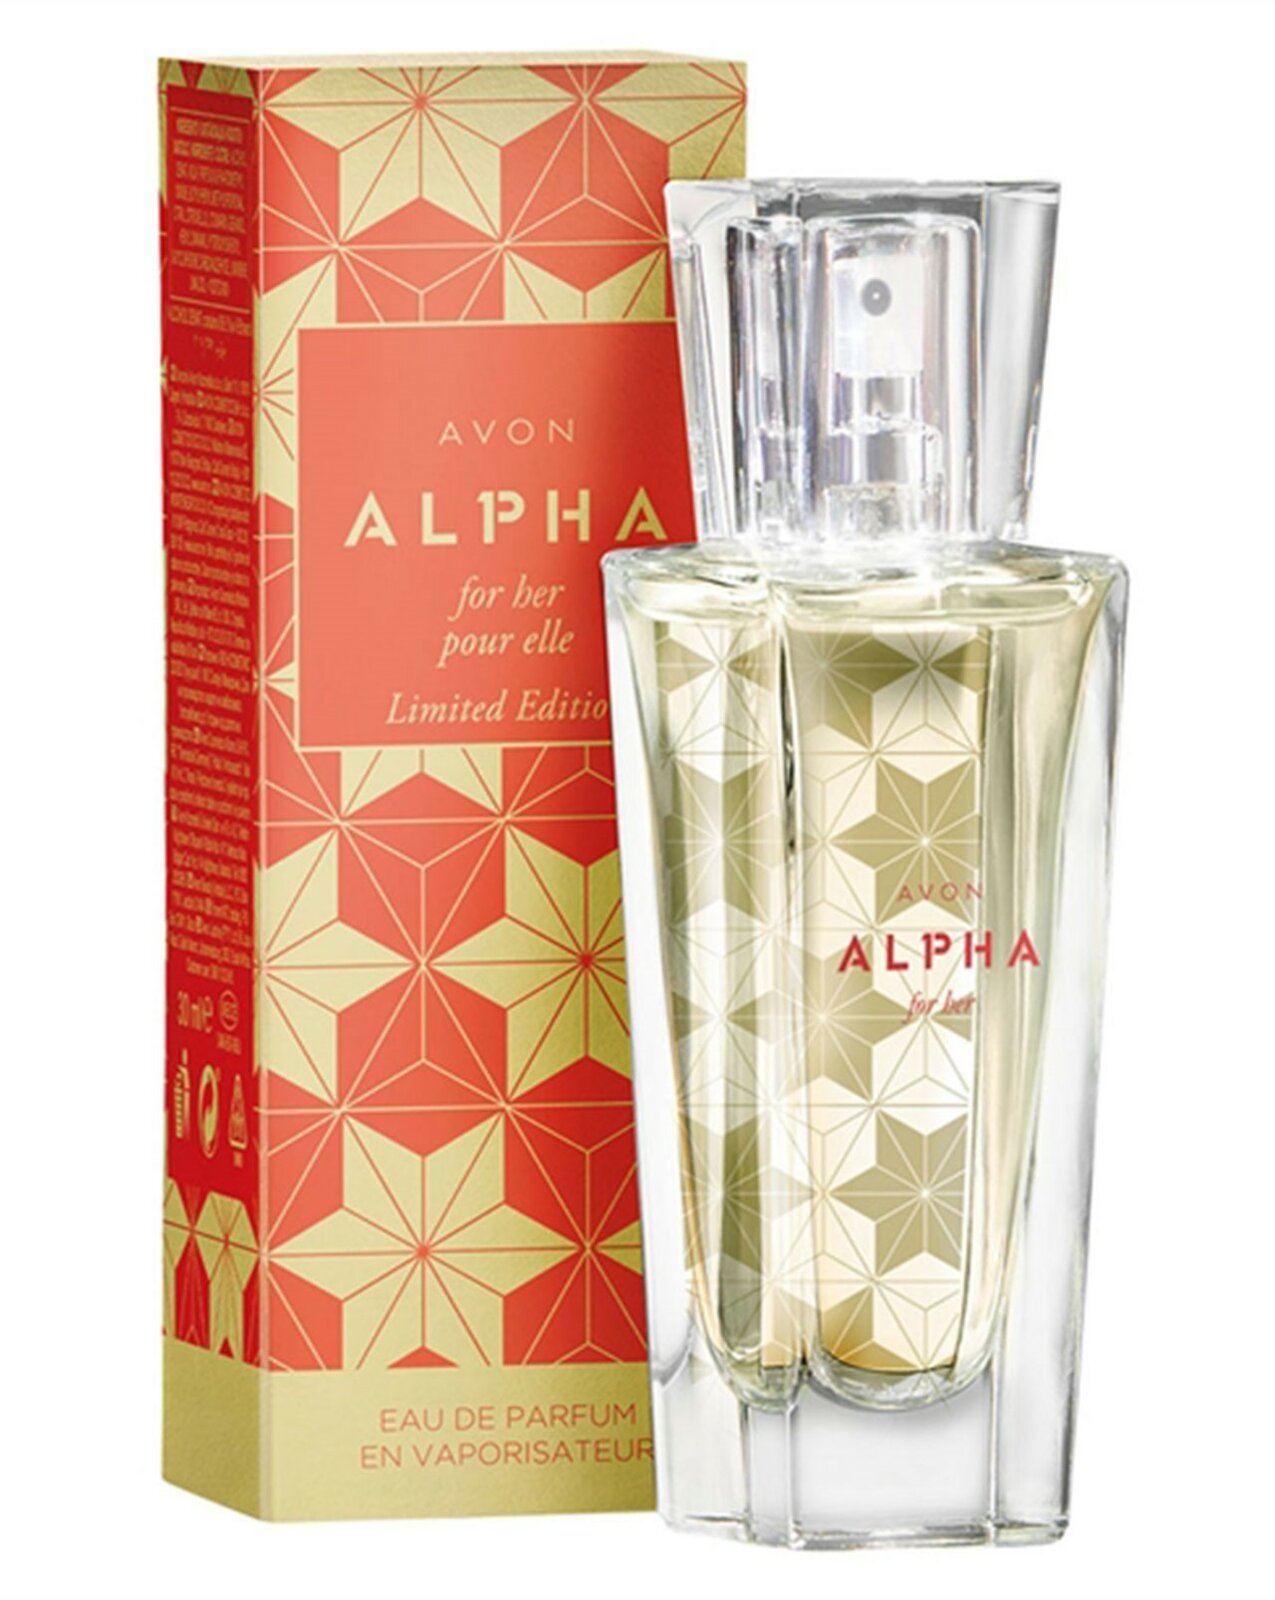 Alpha Kadın EDP Parfümü fiyatı Avon